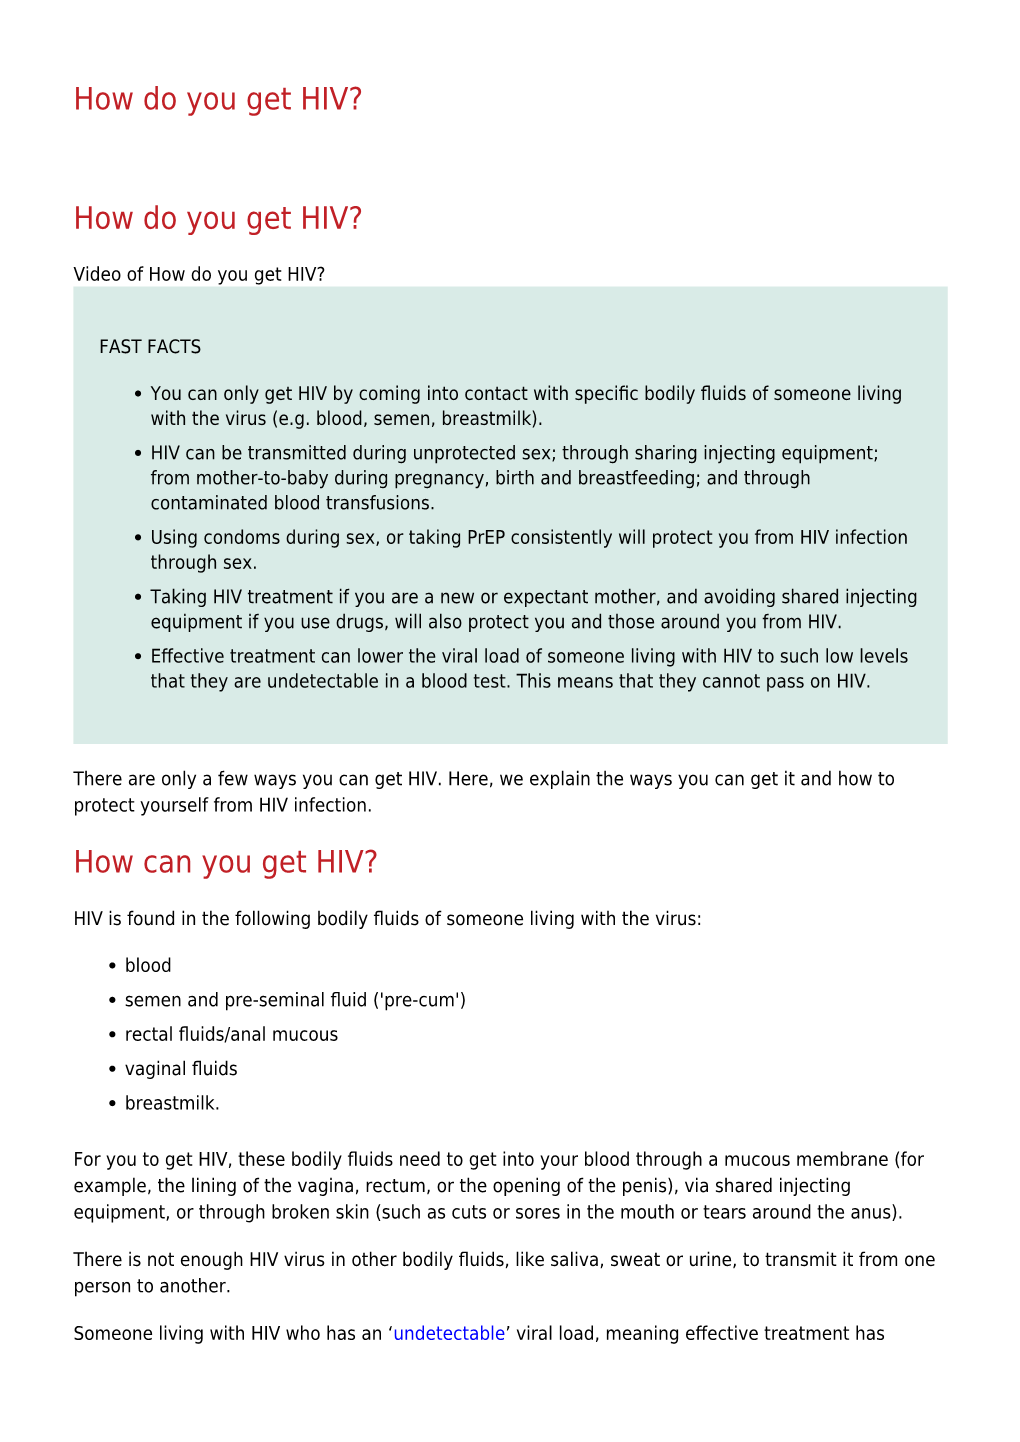 How Do You Get HIV?